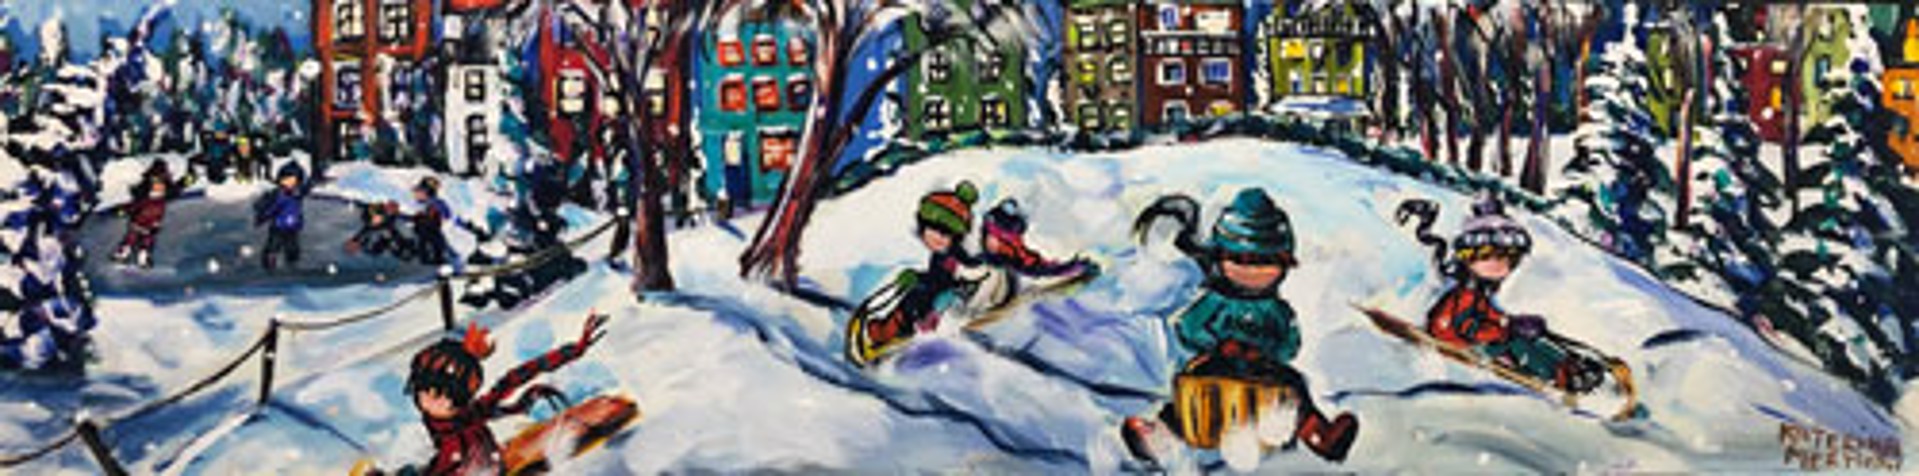 Snow Play by Katerina Mertikas